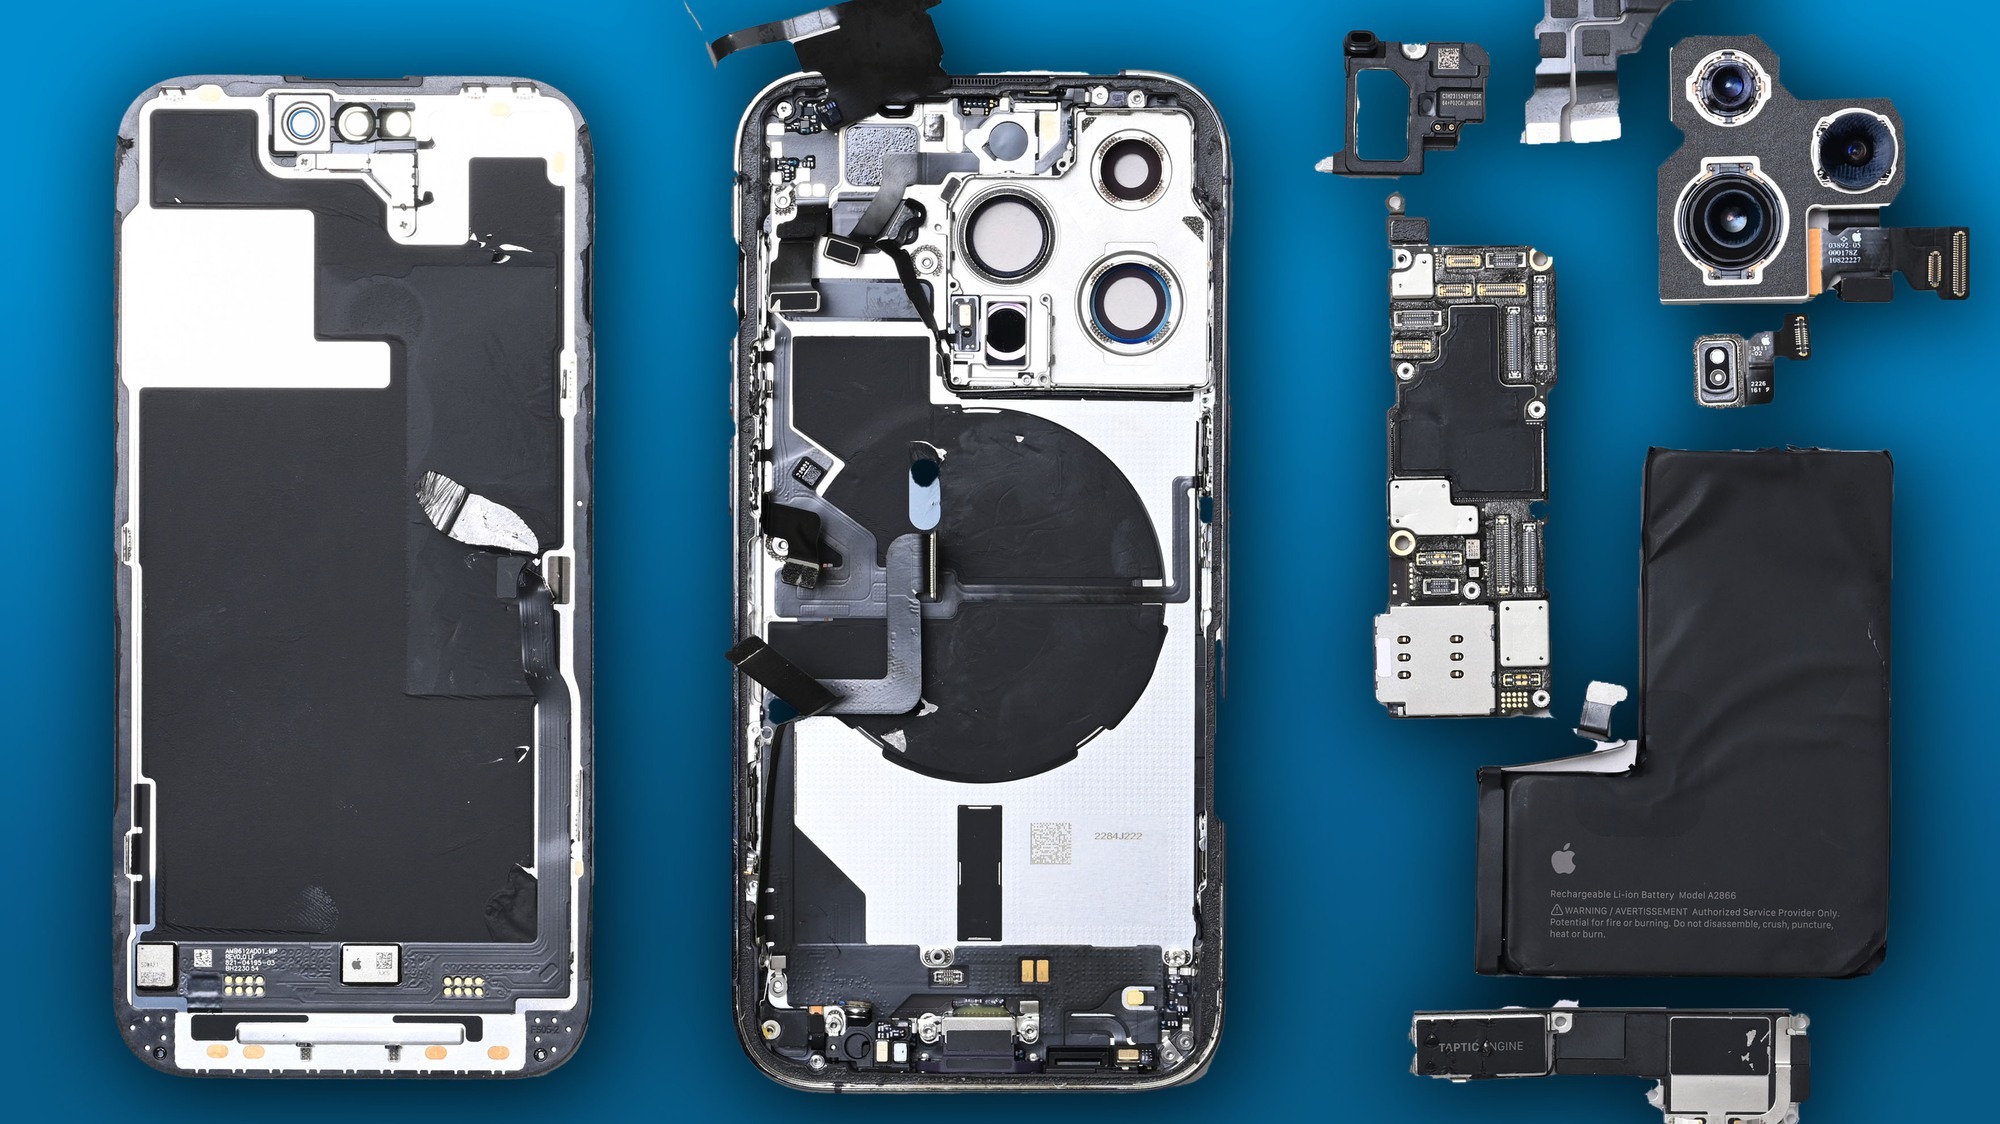 Chi phí sản xuất iPhone 14 Pro Max chỉ cao hơn iPhone 13 Pro Max một chút